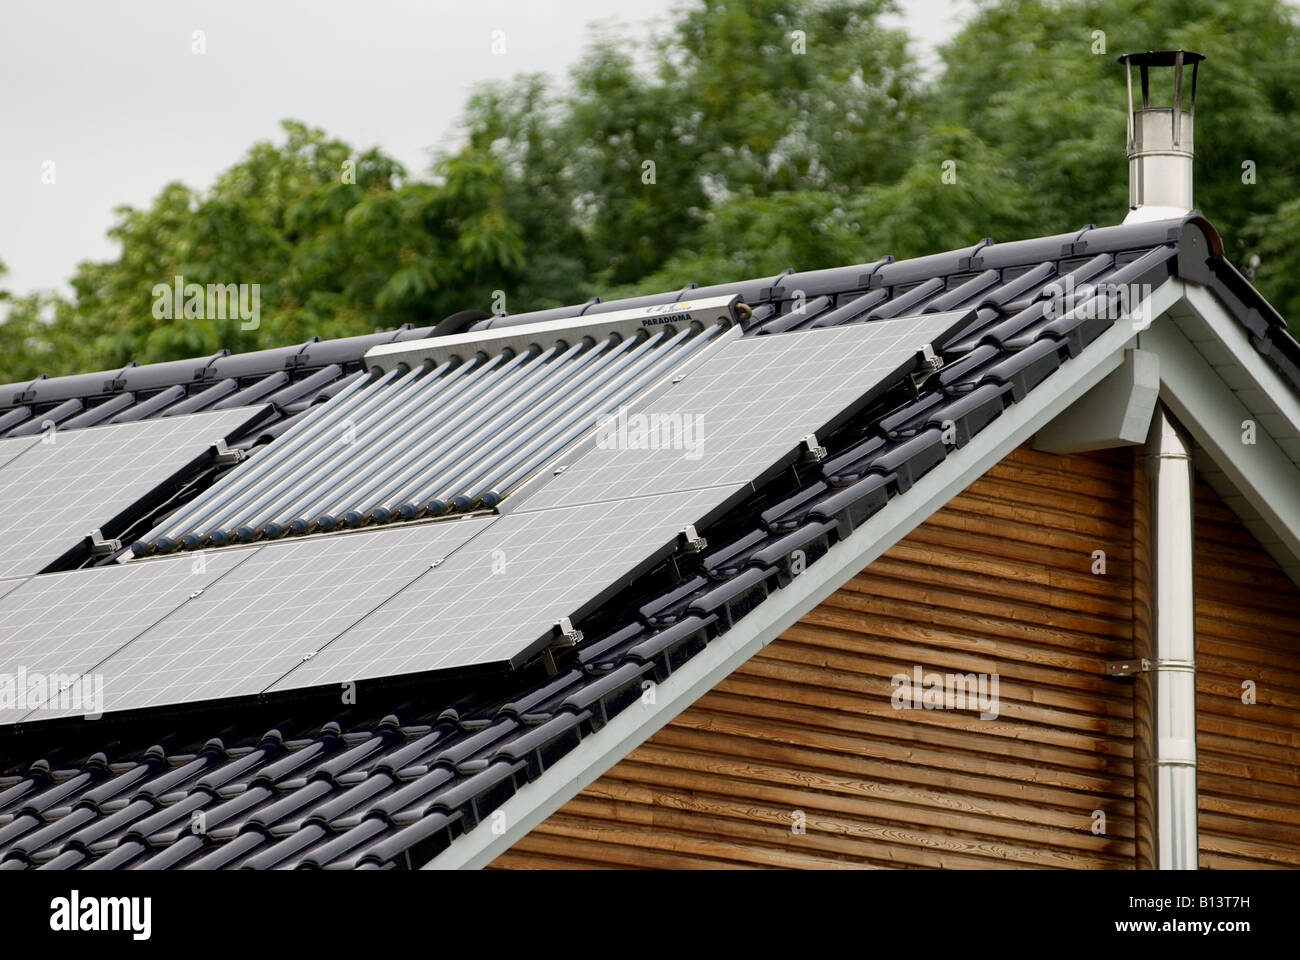 Casa di nuova costruzione con pannelli solari montati sul tetto, Bocklemund, Colonia, Germania. Foto Stock